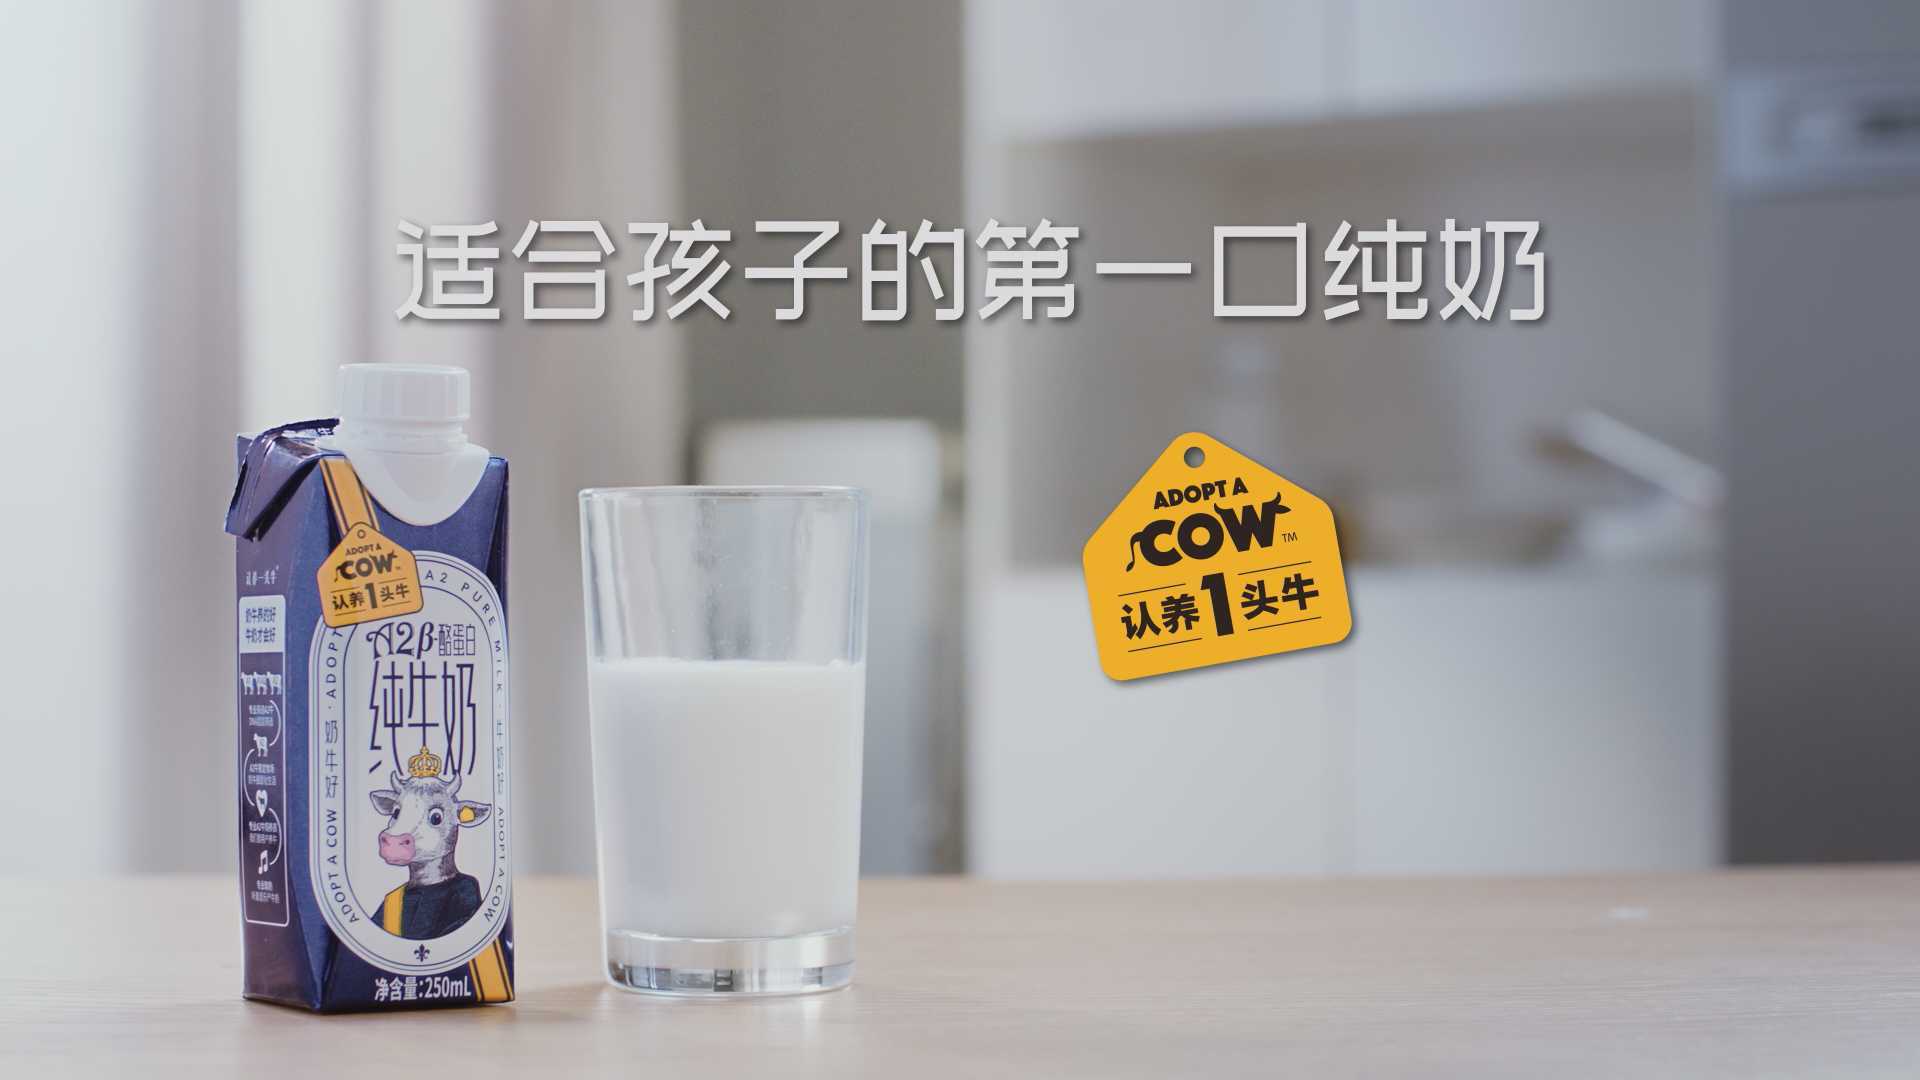 《认养一头牛》牛奶广告_微缩动画